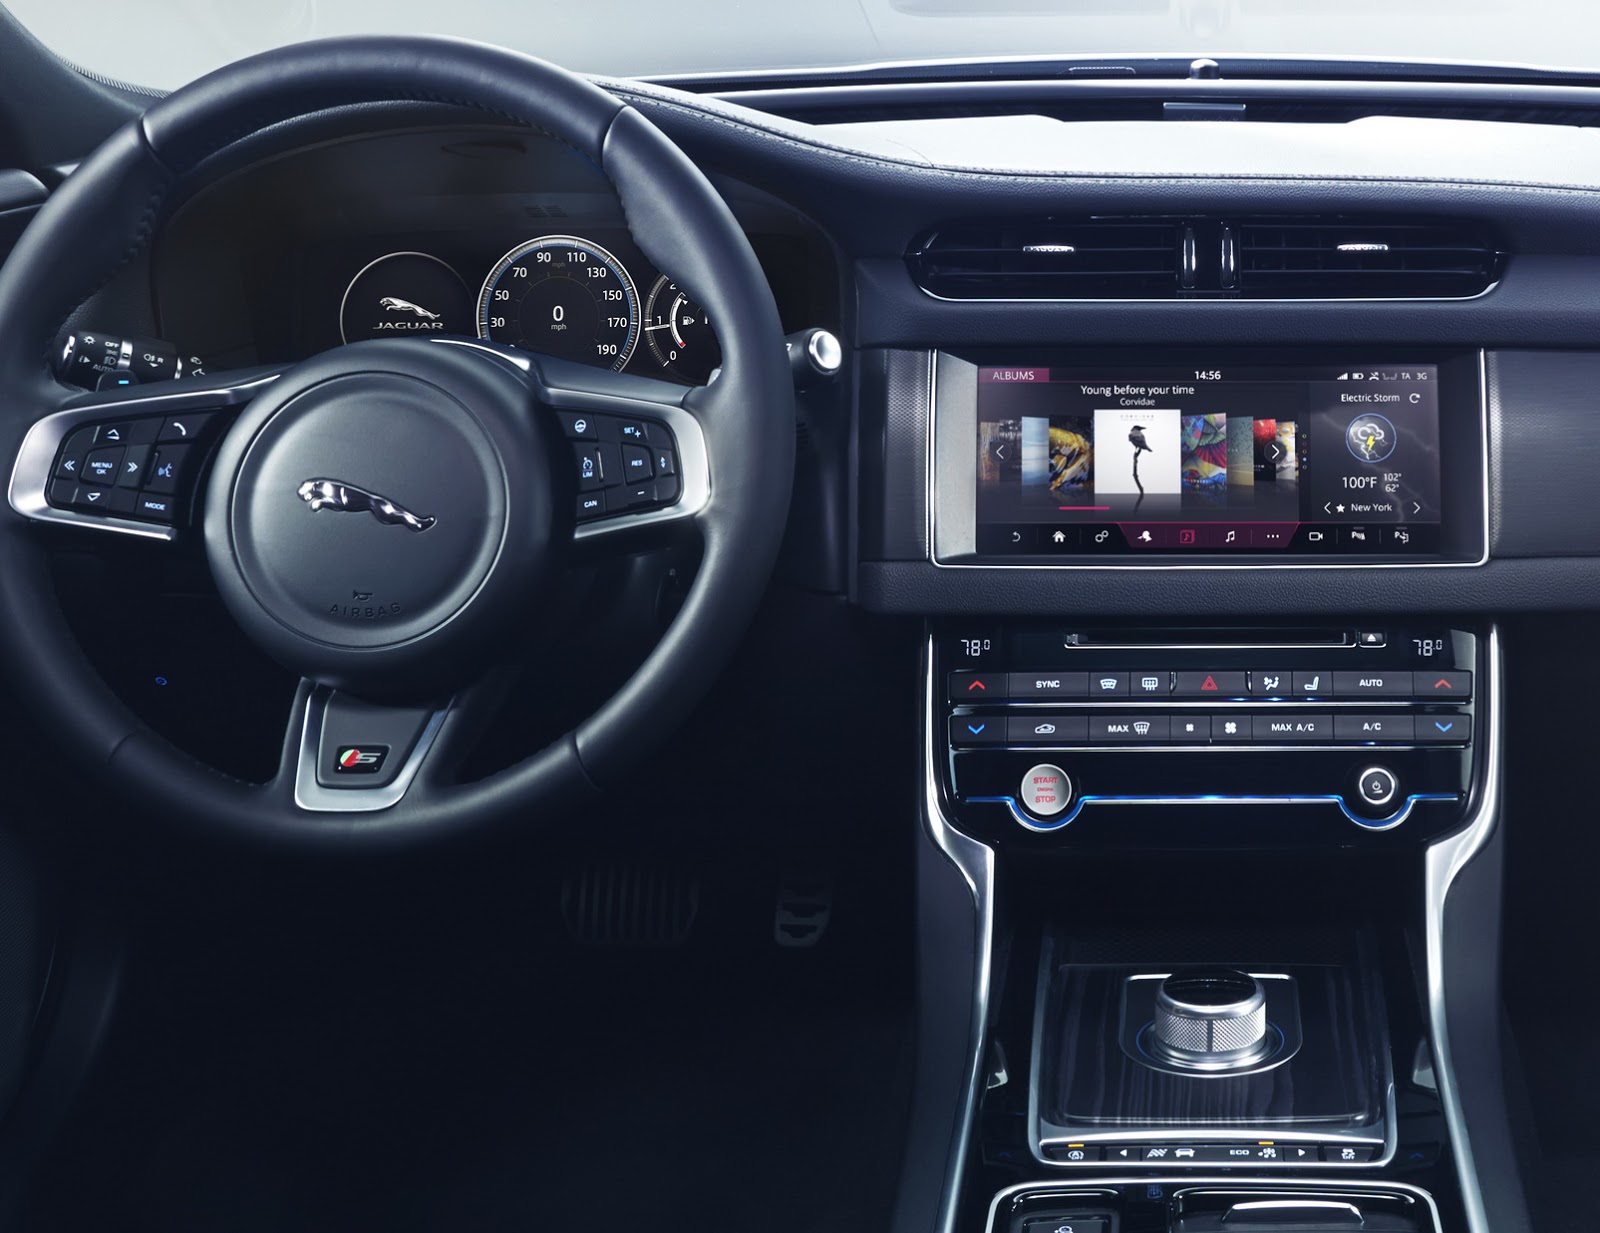 Jaguar tung teaser cho chiếc sedan XF hoàn toàn mới